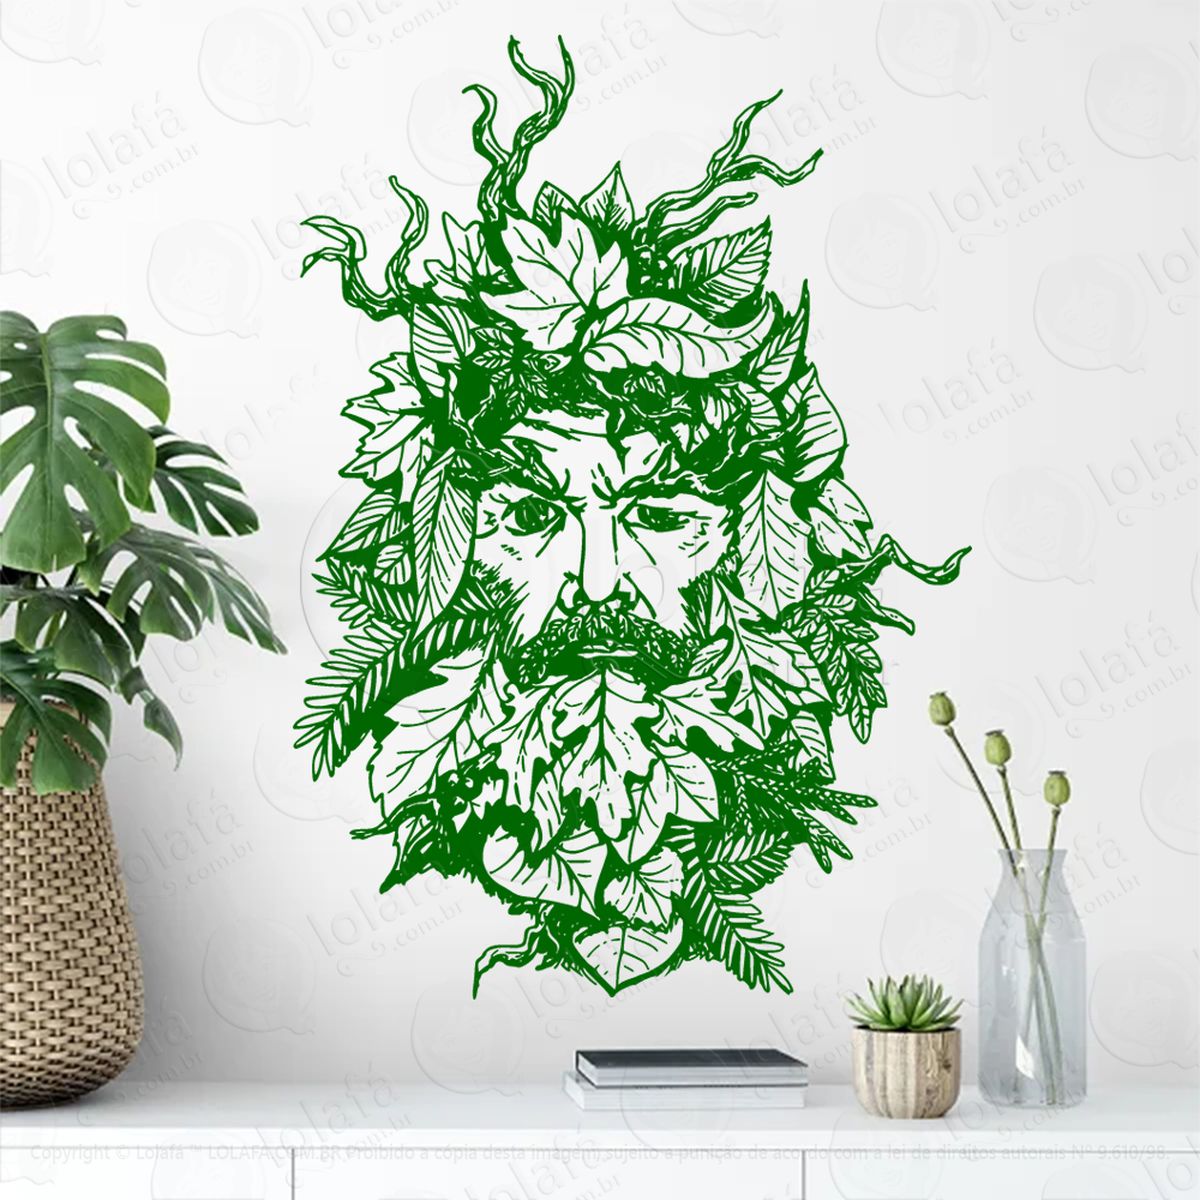 cabeça de homem verde green man head adesivo de parede decorativo para casa, sala, quarto, vidro e altar ocultista - mod:180